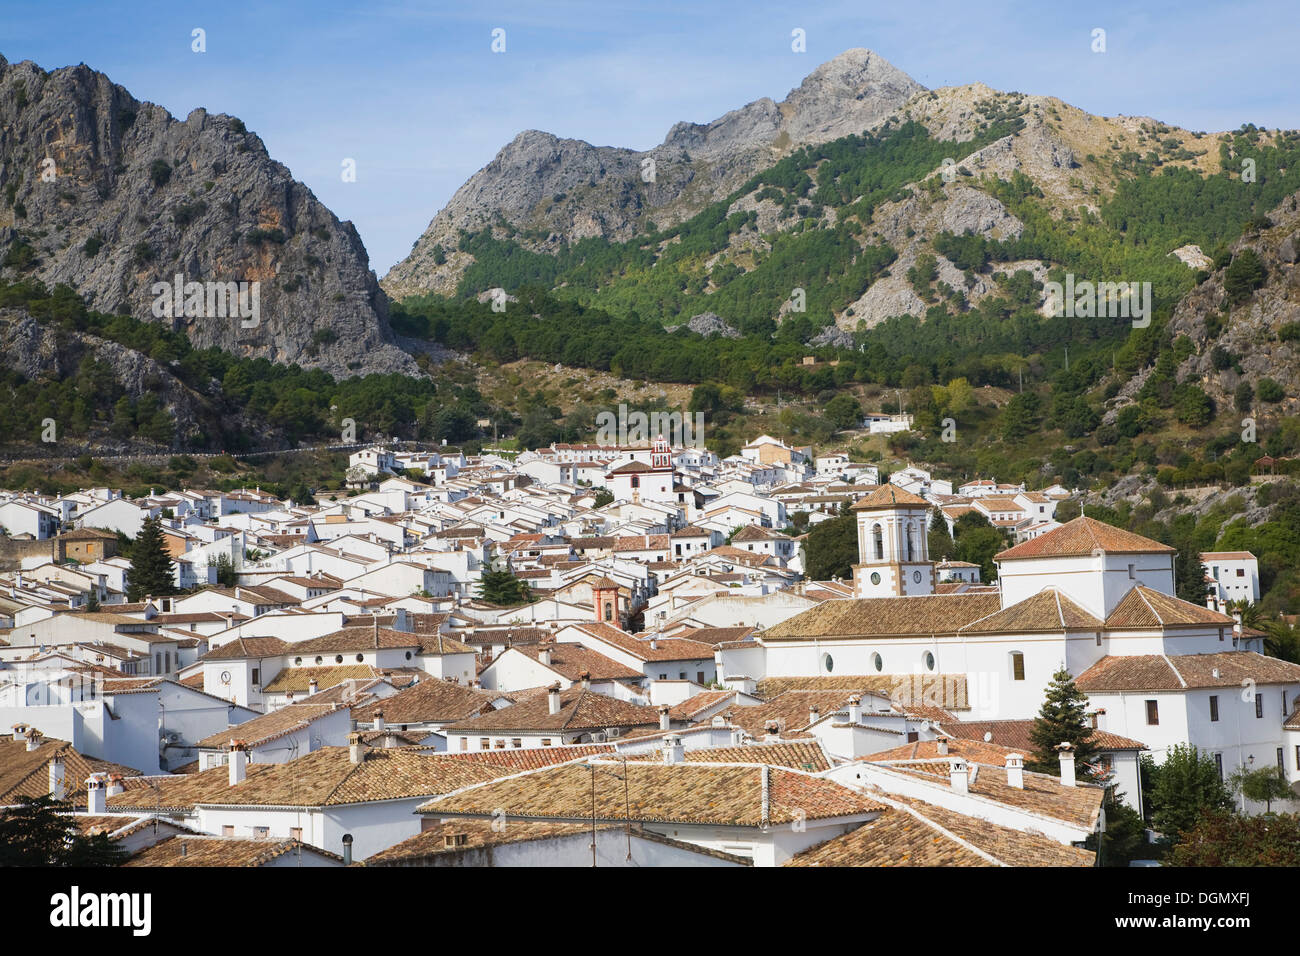 Pueblo de Grazalema en espectaculares montañas de piedra caliza, Sierra de Grazalema, Cádiz, Andalucía Foto de stock